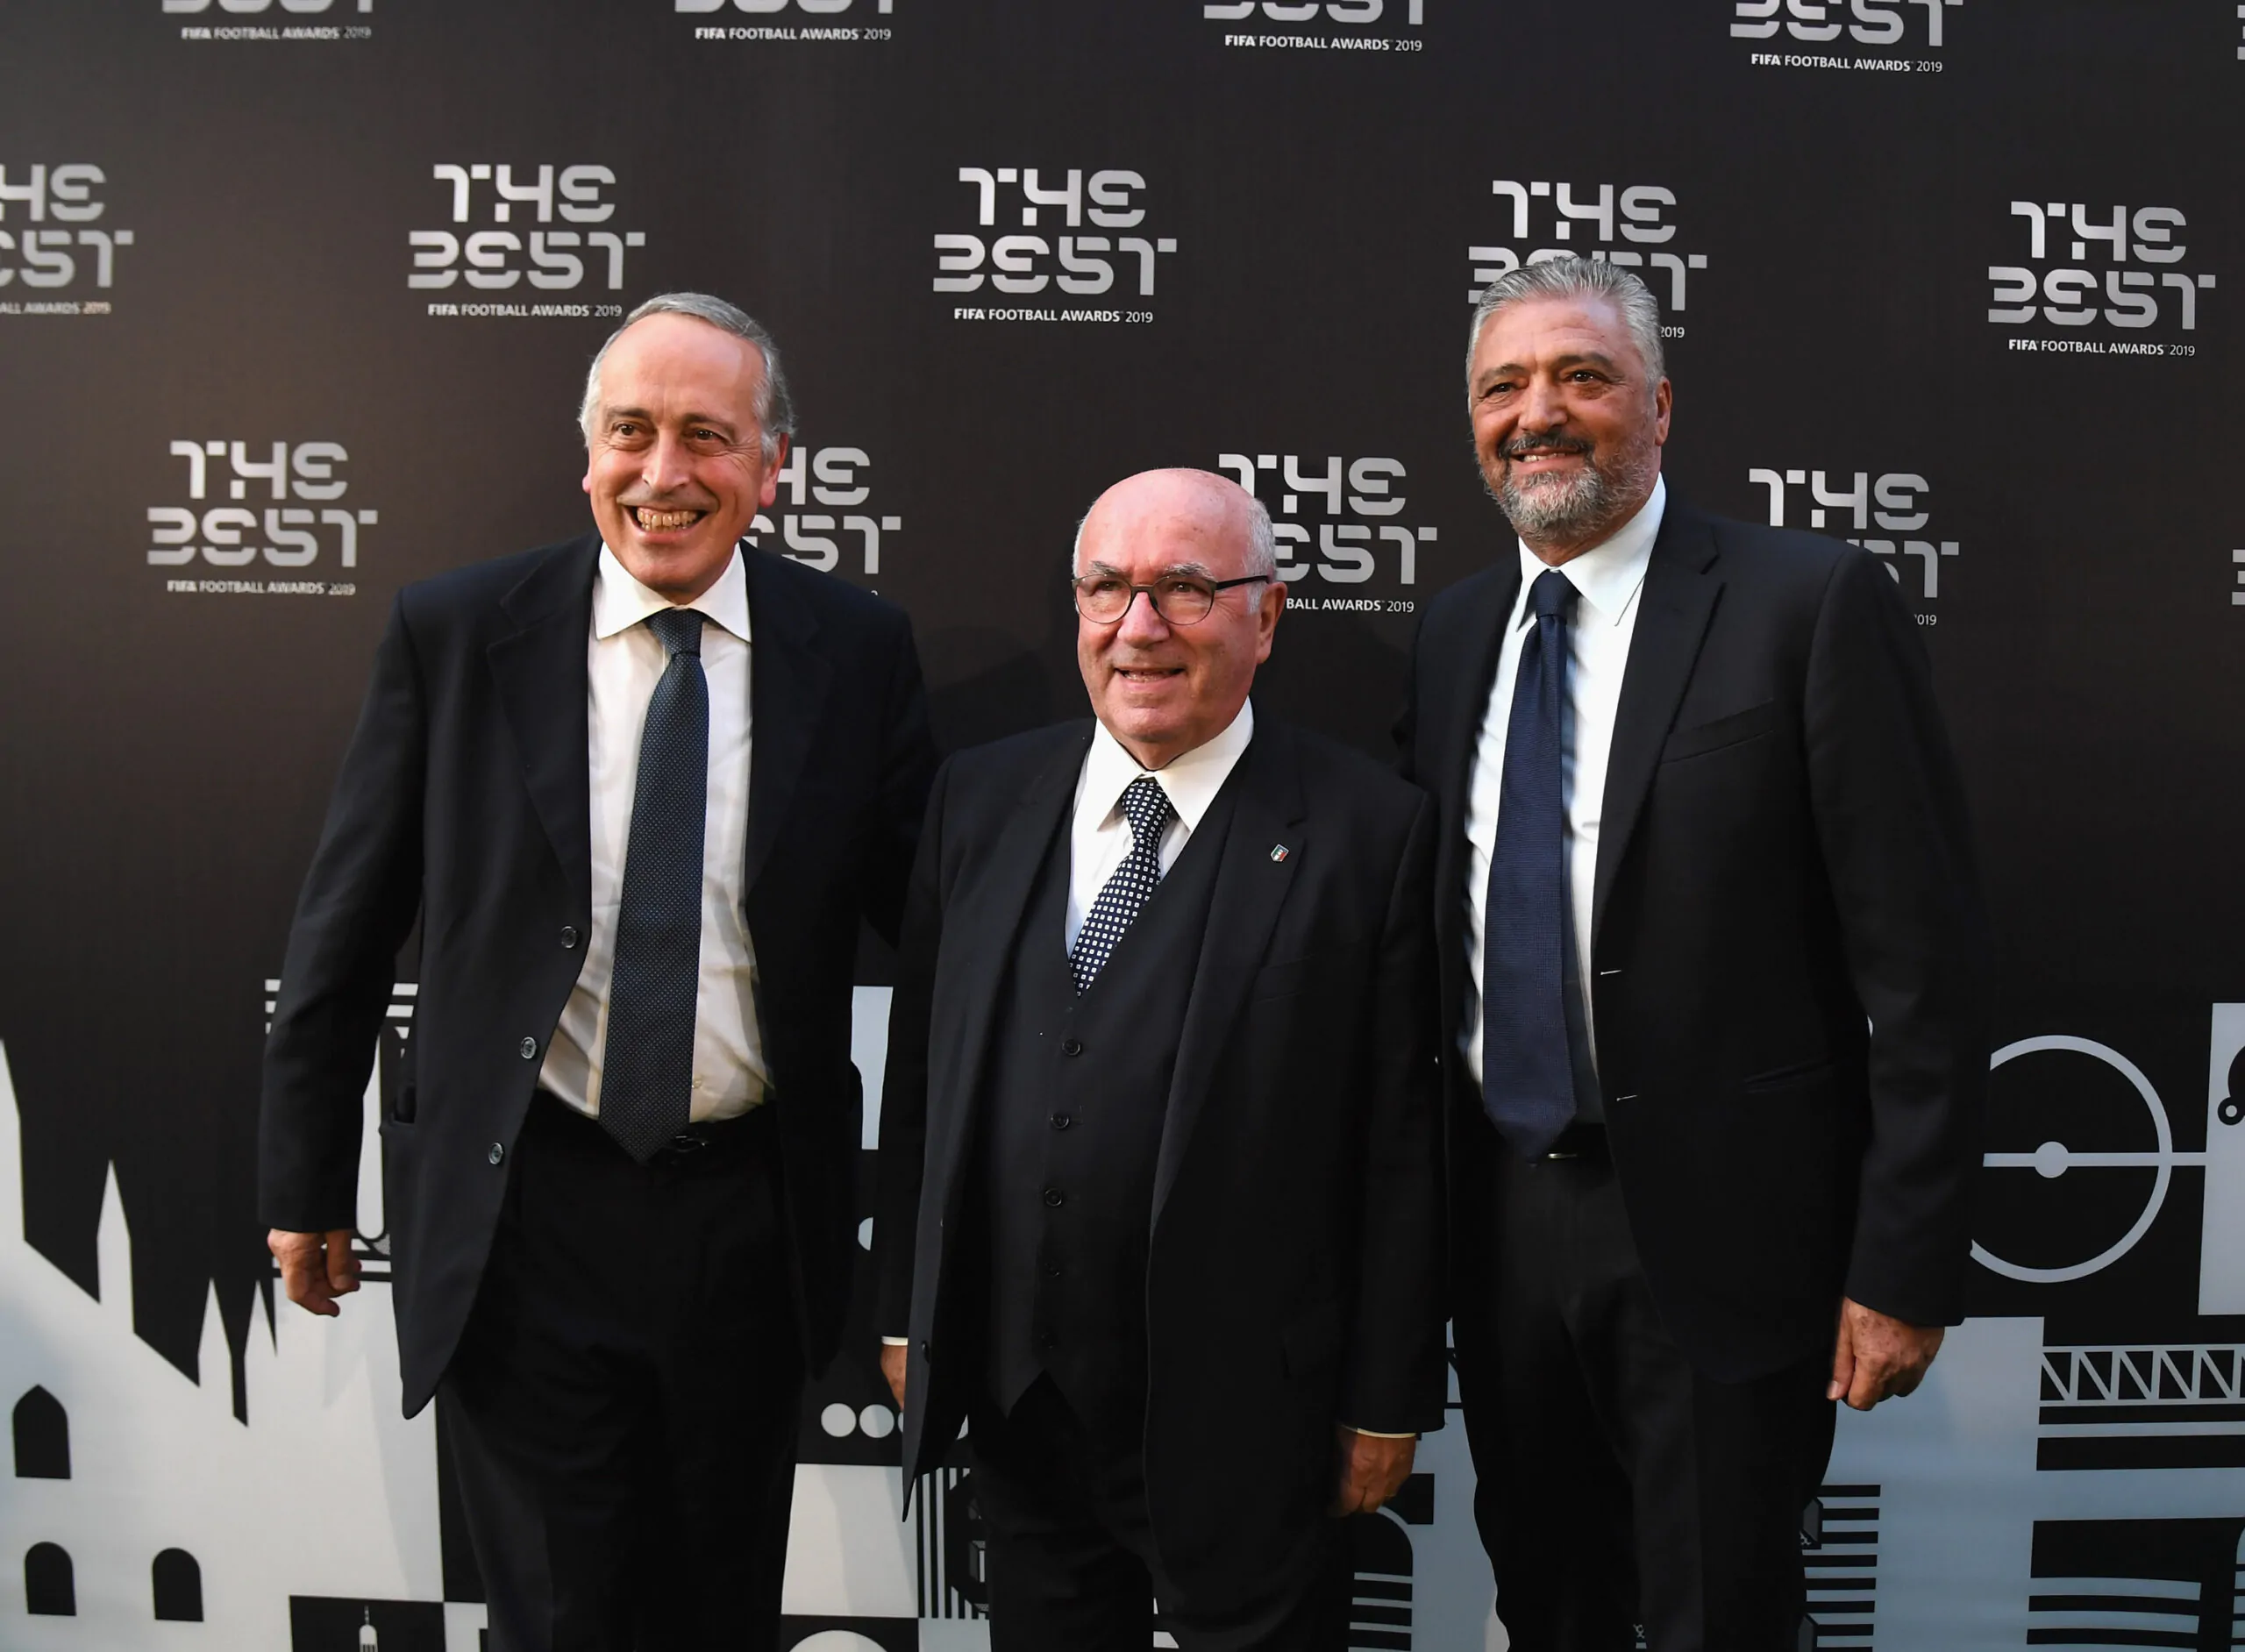 FIFA, ecco chi sono i tre finalisti del The Best!